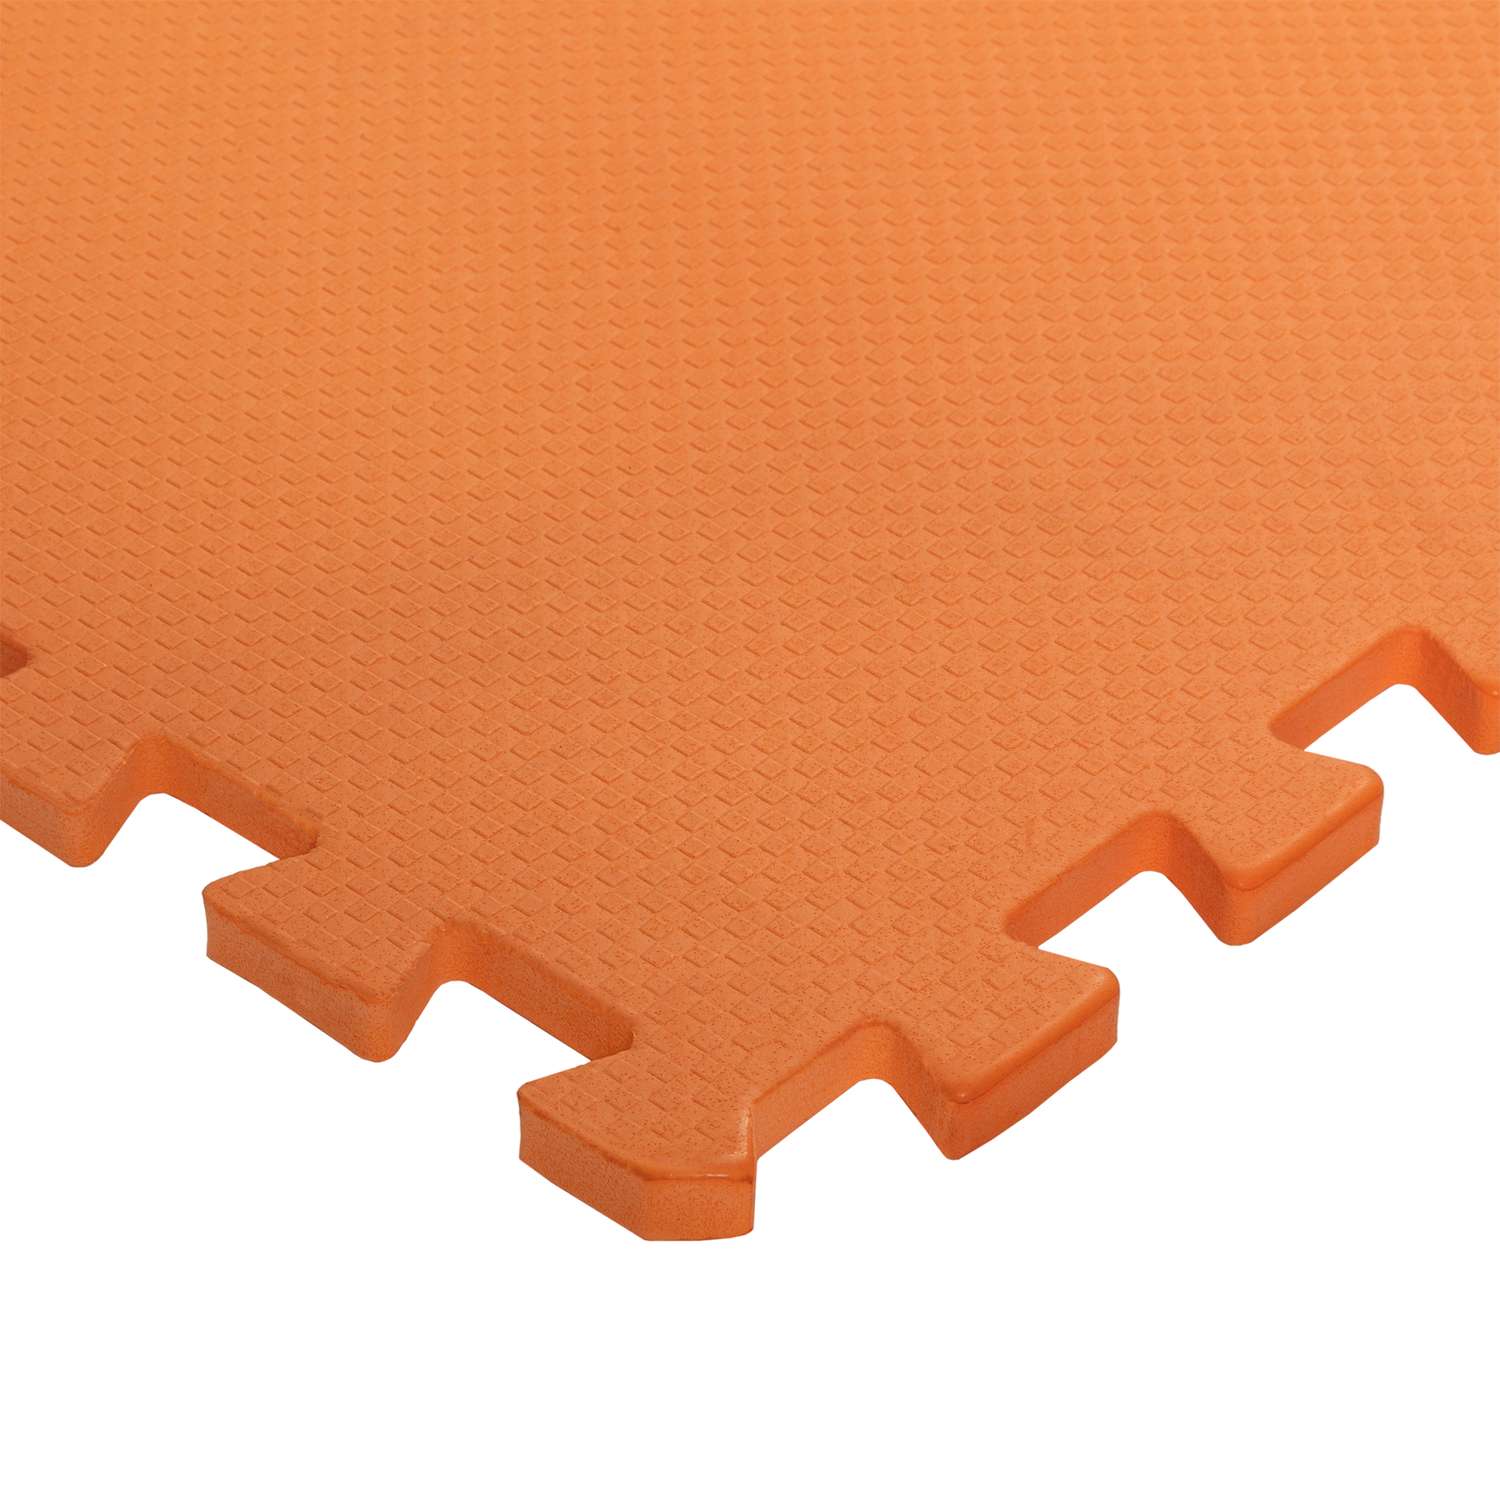 Развивающий детский коврик Eco cover игровой мягкий пол для ползания оранжевый 60х60 - фото 2